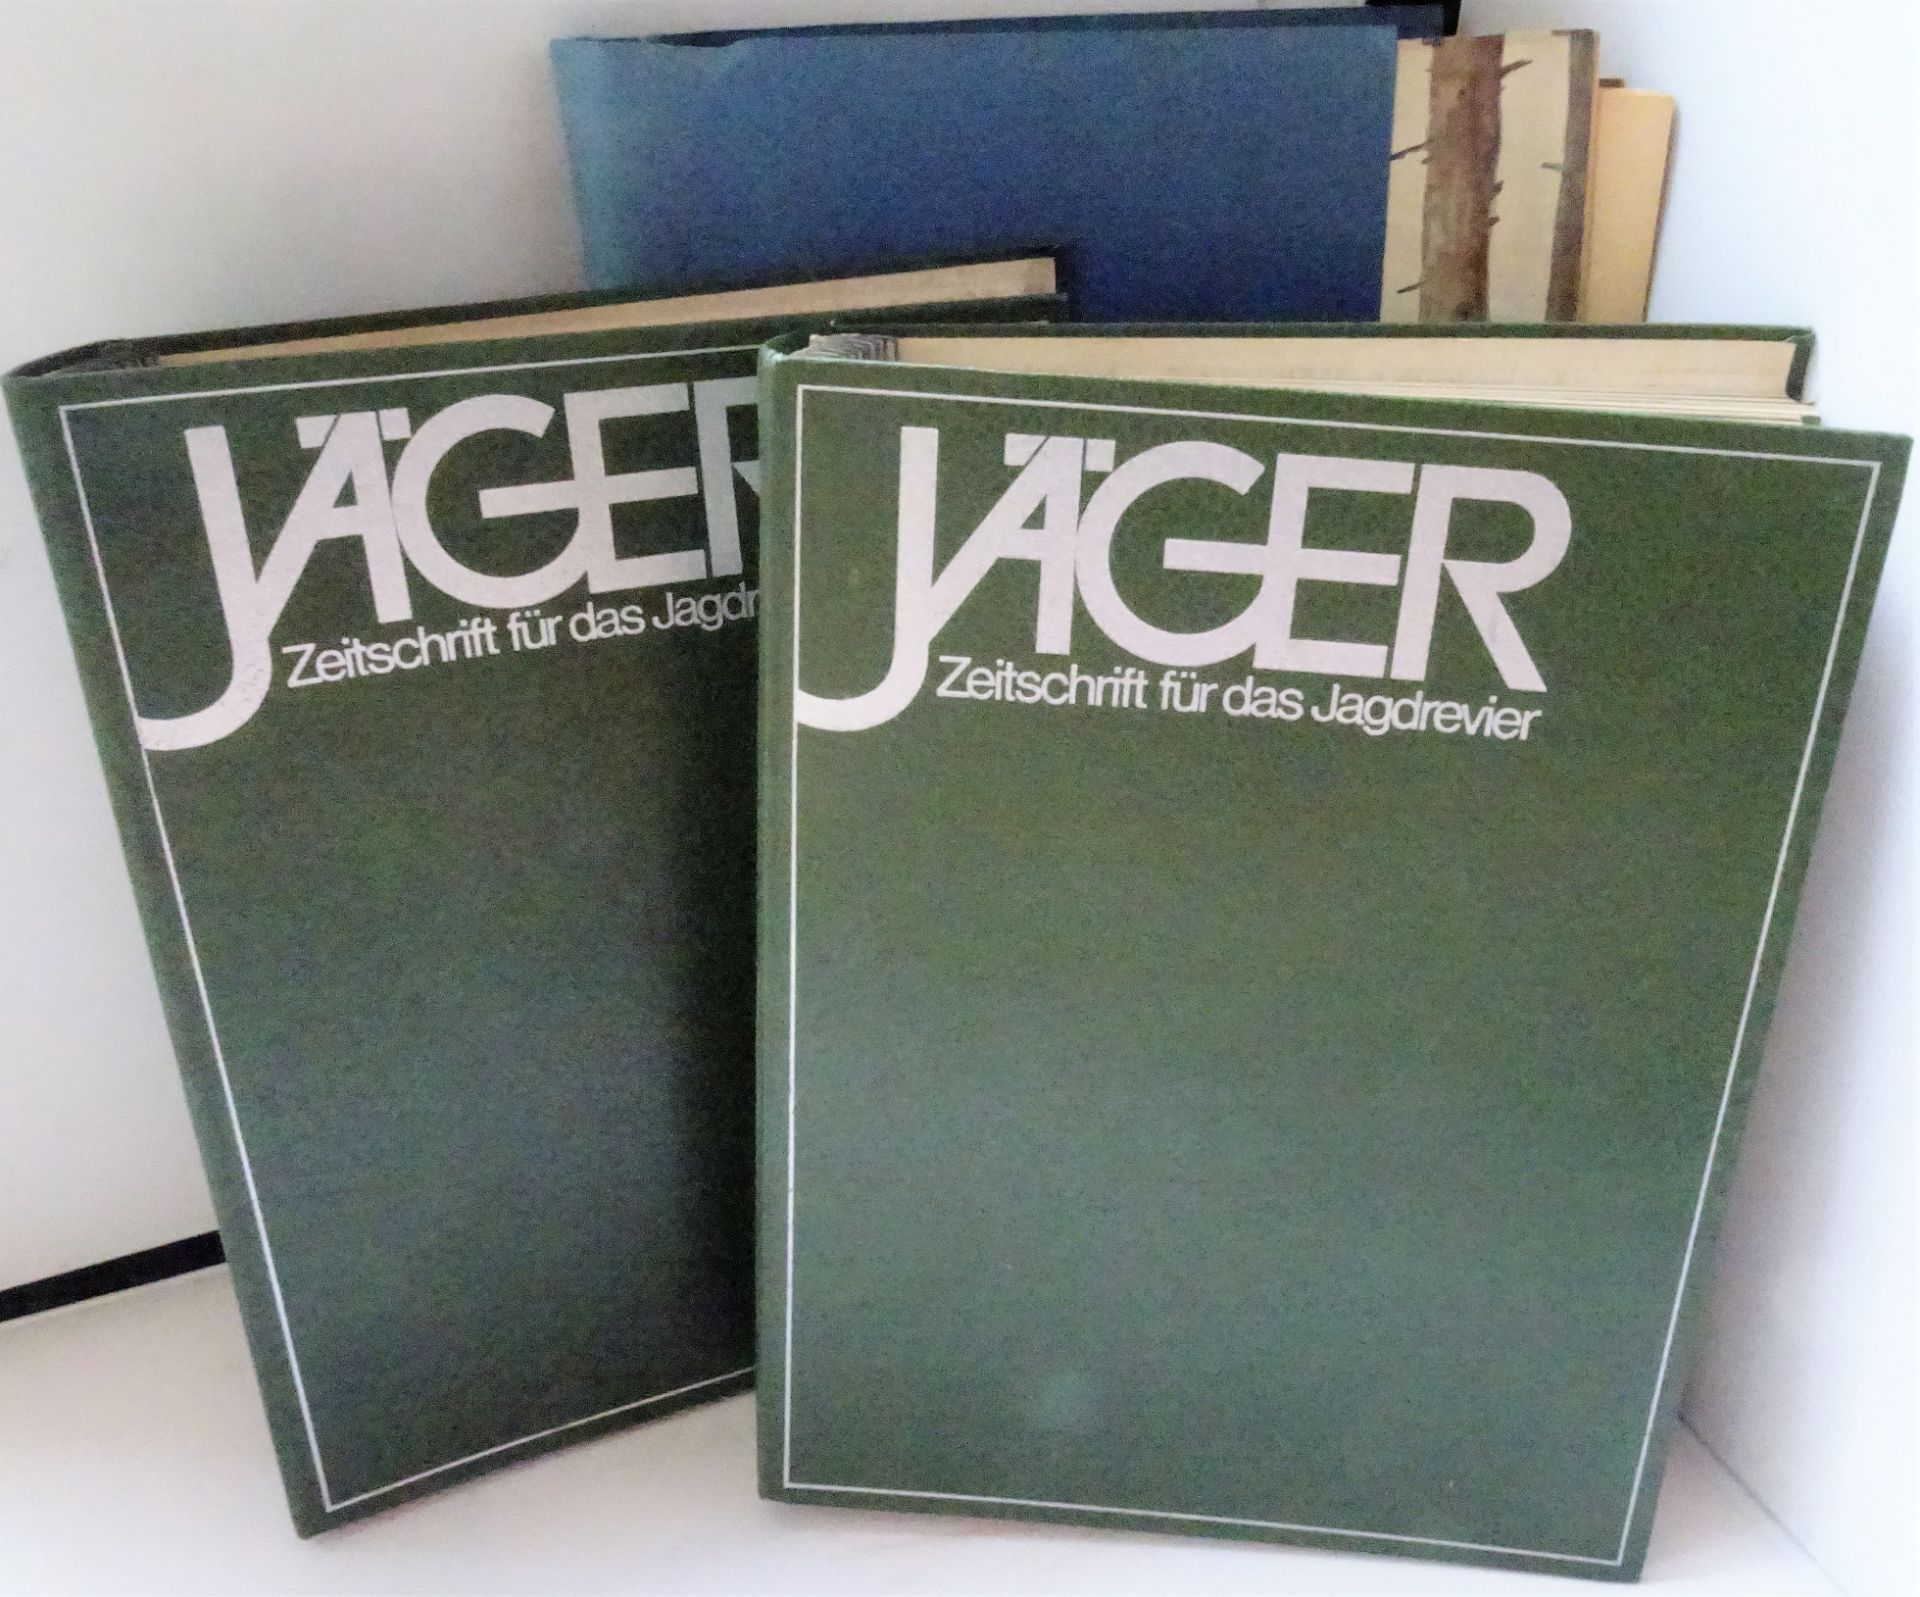 Jäger - Zeitschrift für das Jagdrevier, gebunden. Jahrgang 1976, 1977 und verschiedene Zeitschriften